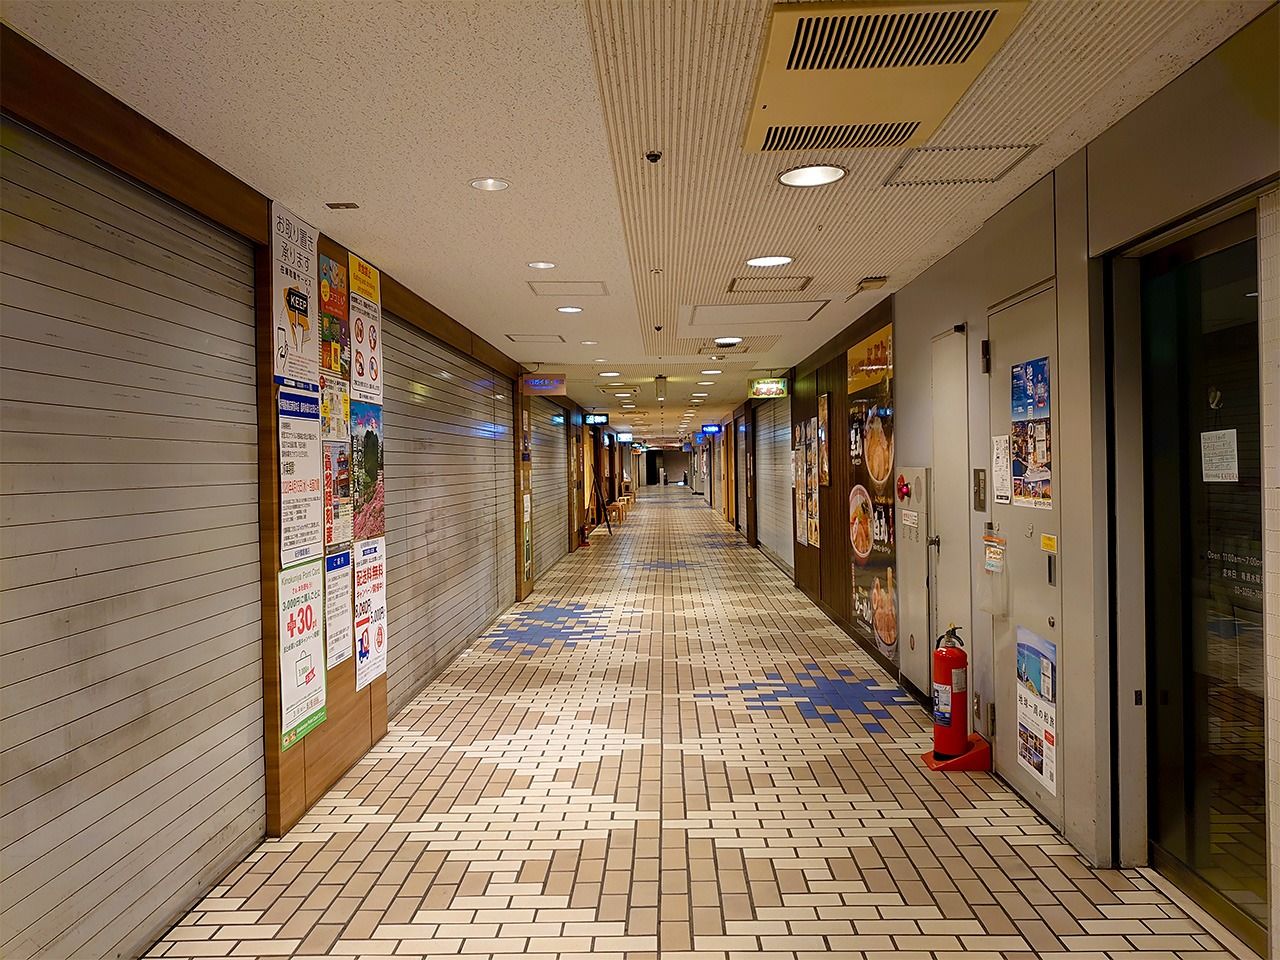 La galerie marchande en sous-sol du bâtiment Kinokuniya plongée dans le silence